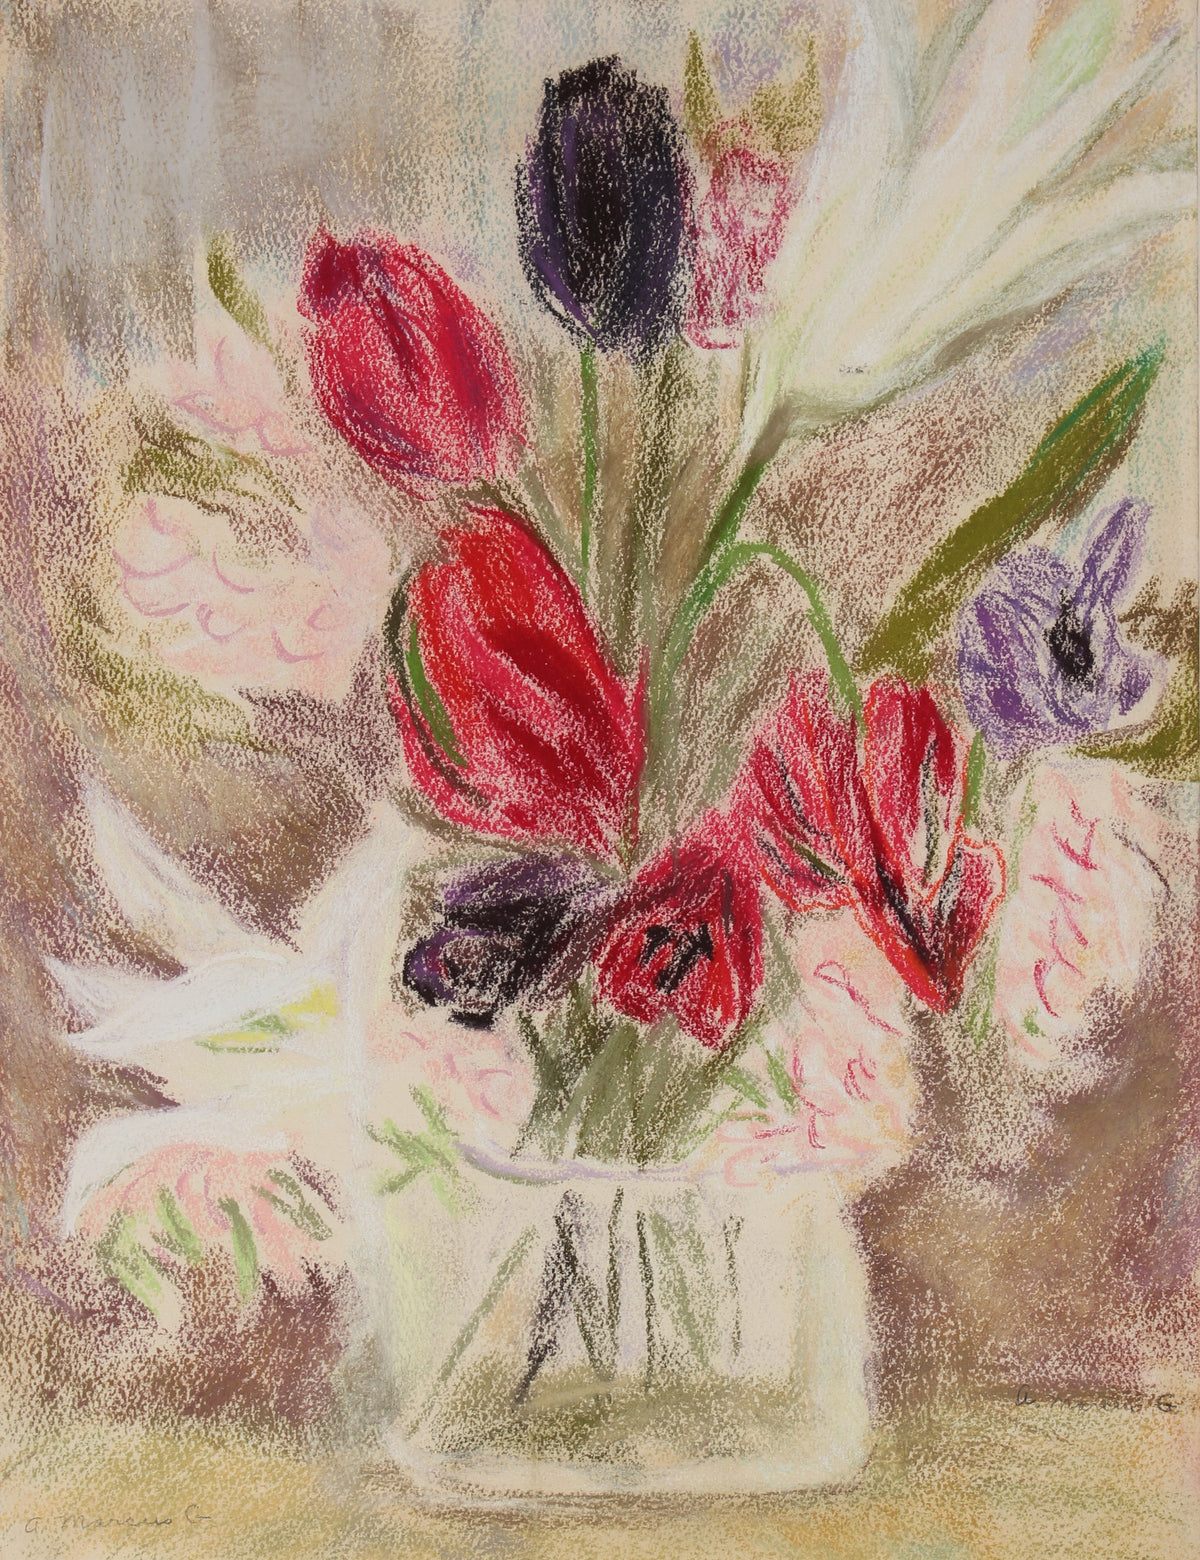 &lt;i&gt;Tulips&lt;/i&gt;&lt;br&gt;1960s Pastel Still Life&lt;br&gt;&lt;br&gt;#89628